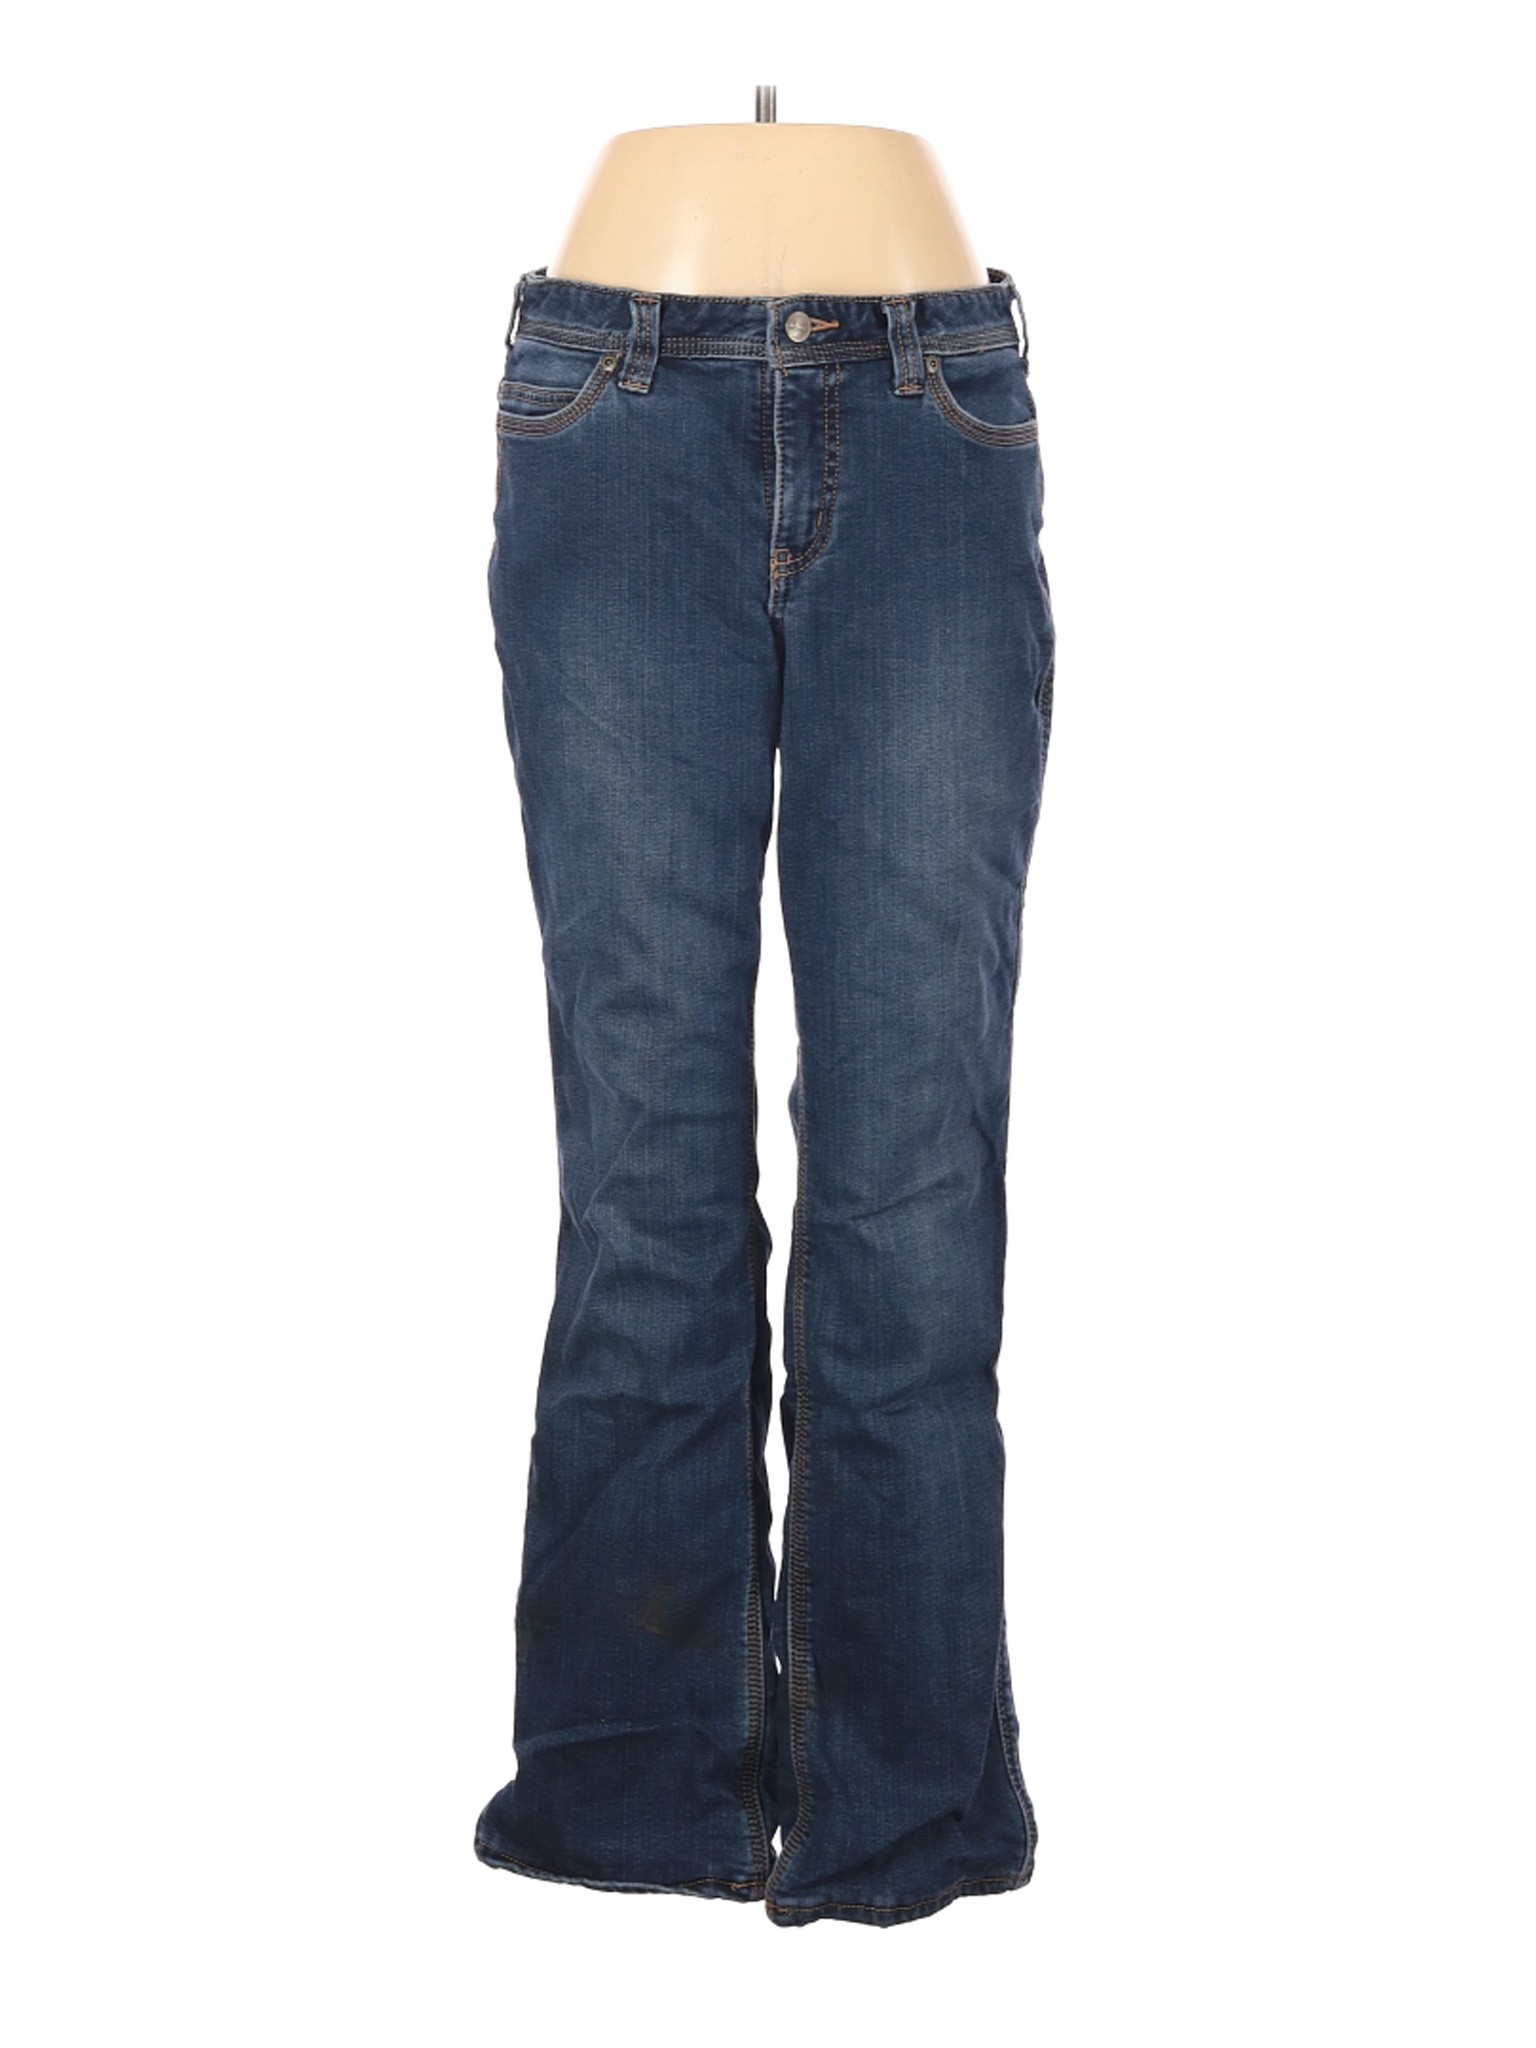 Carhartt Women Blue Jeans 6 | eBay